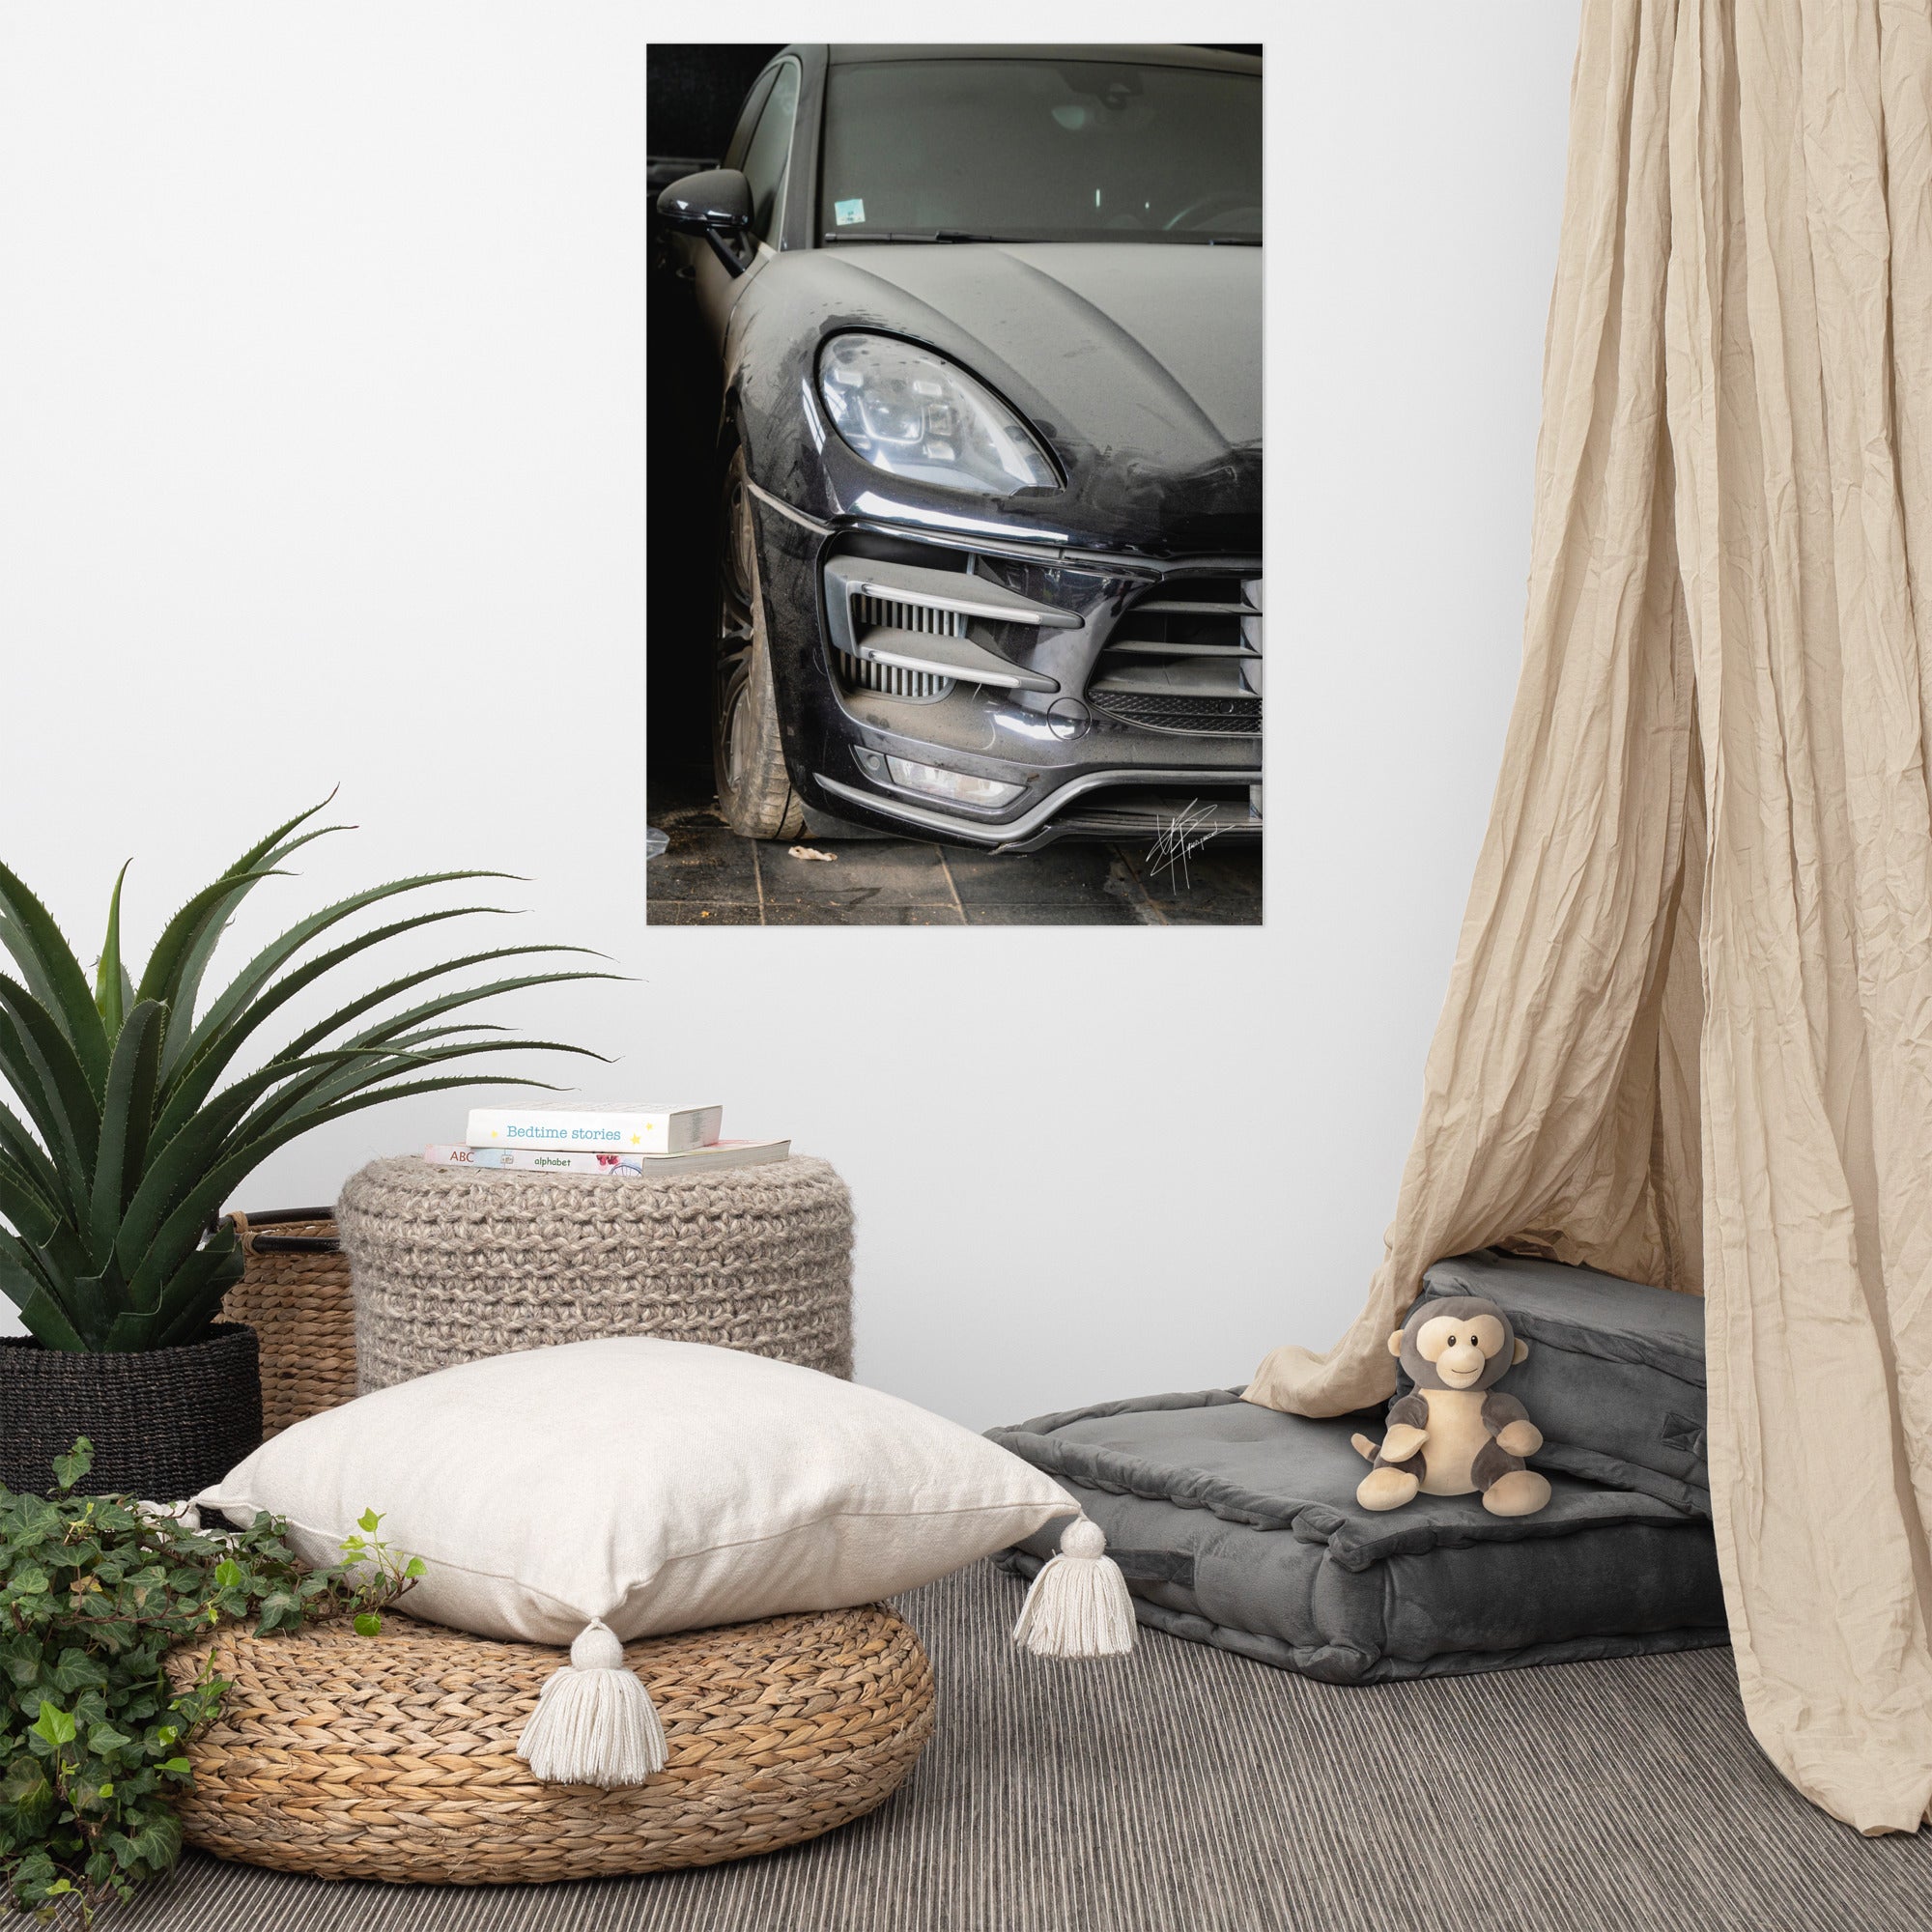 Photographie d'un Porsche Cayenne noir abandonné dans un garage poussiéreux.